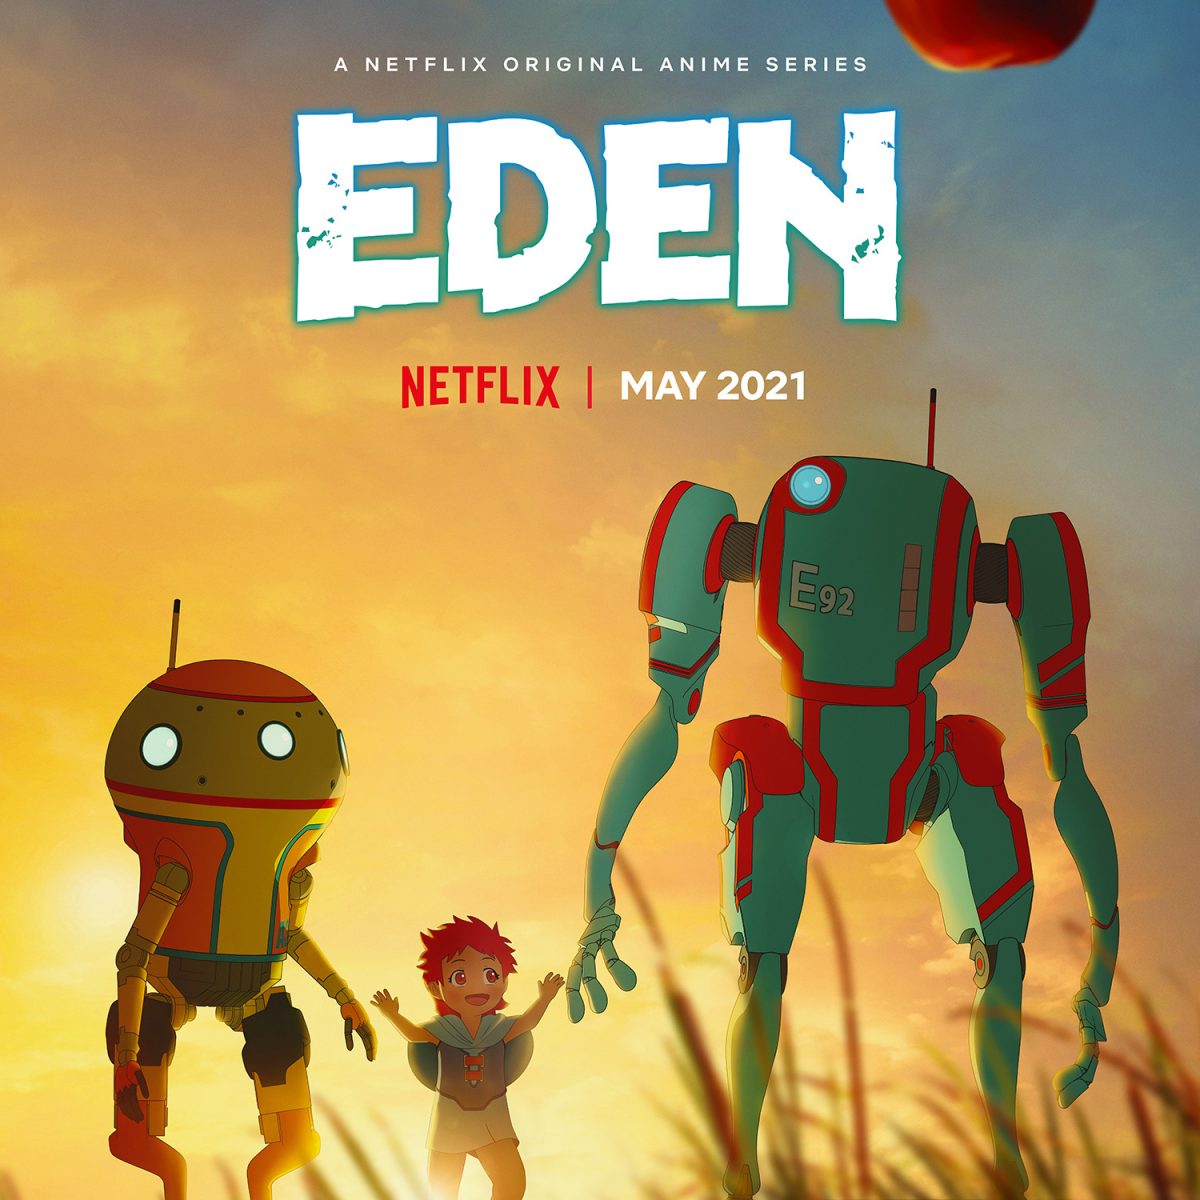 netflixbrasil on X: Meu anime Edens Zero conta a história de um garoto  solitário viajando pelo espaço, com o poder de ✨CONTROLAR A GRAVIDADE✨, e  em busca de uma deusa. Doido, né?